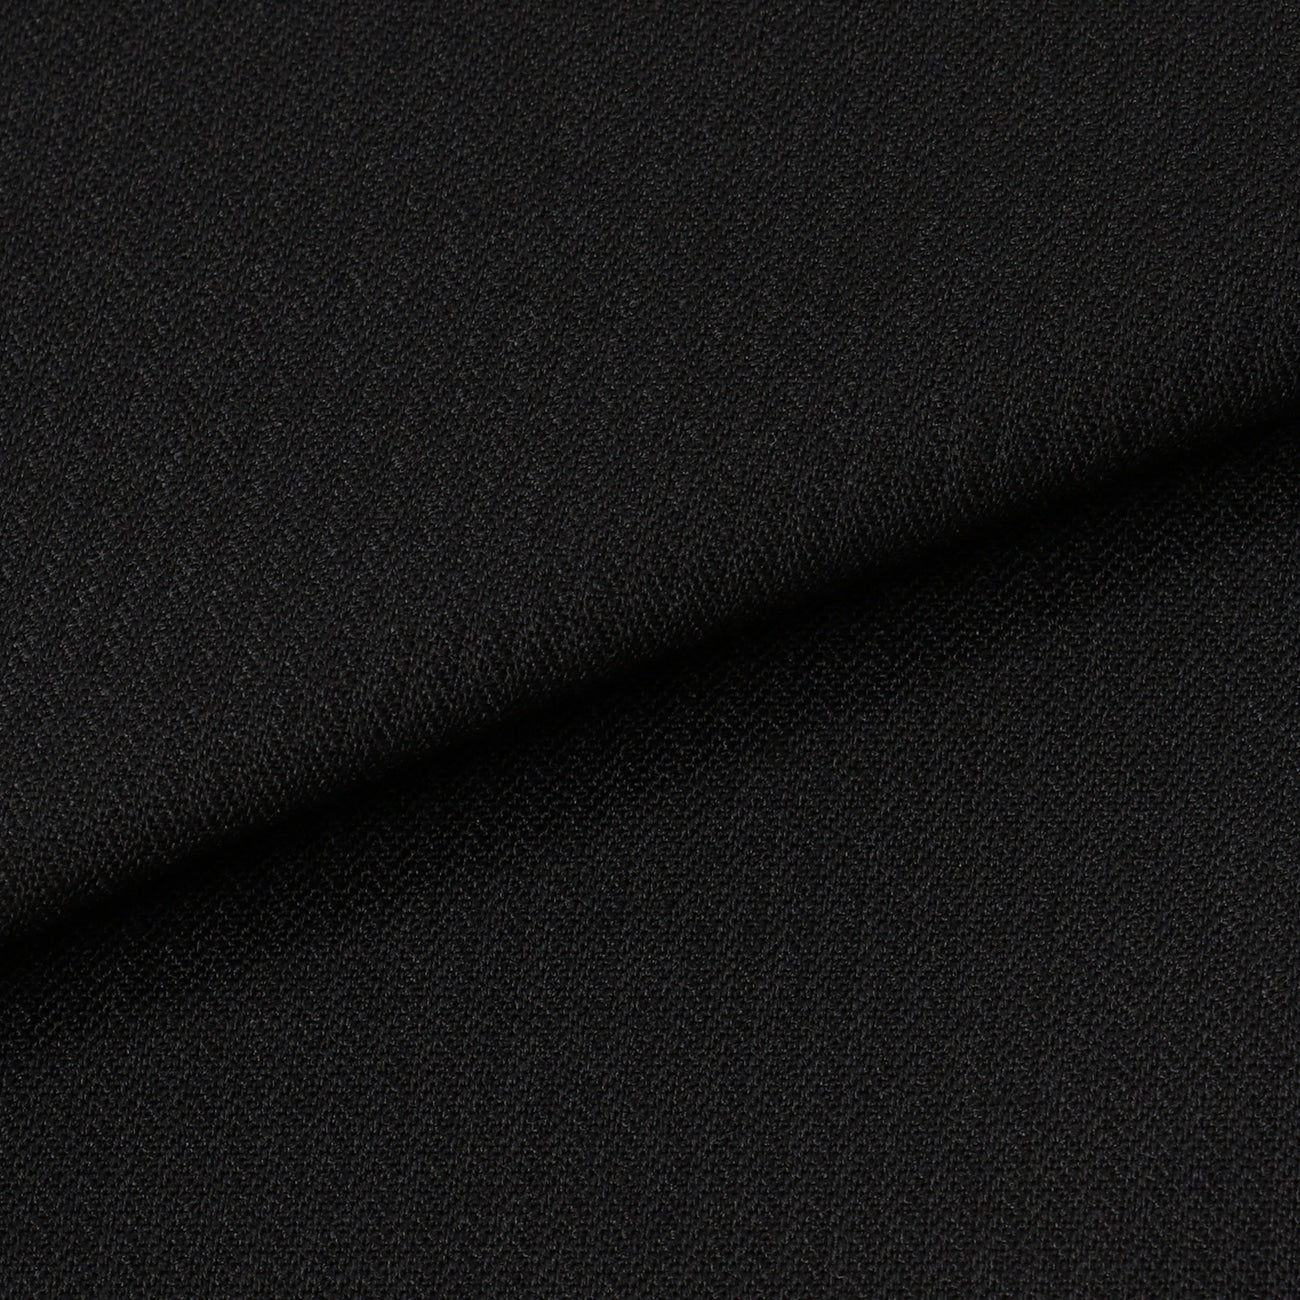 塔斯馬尼亞混紡黑色修身西裝